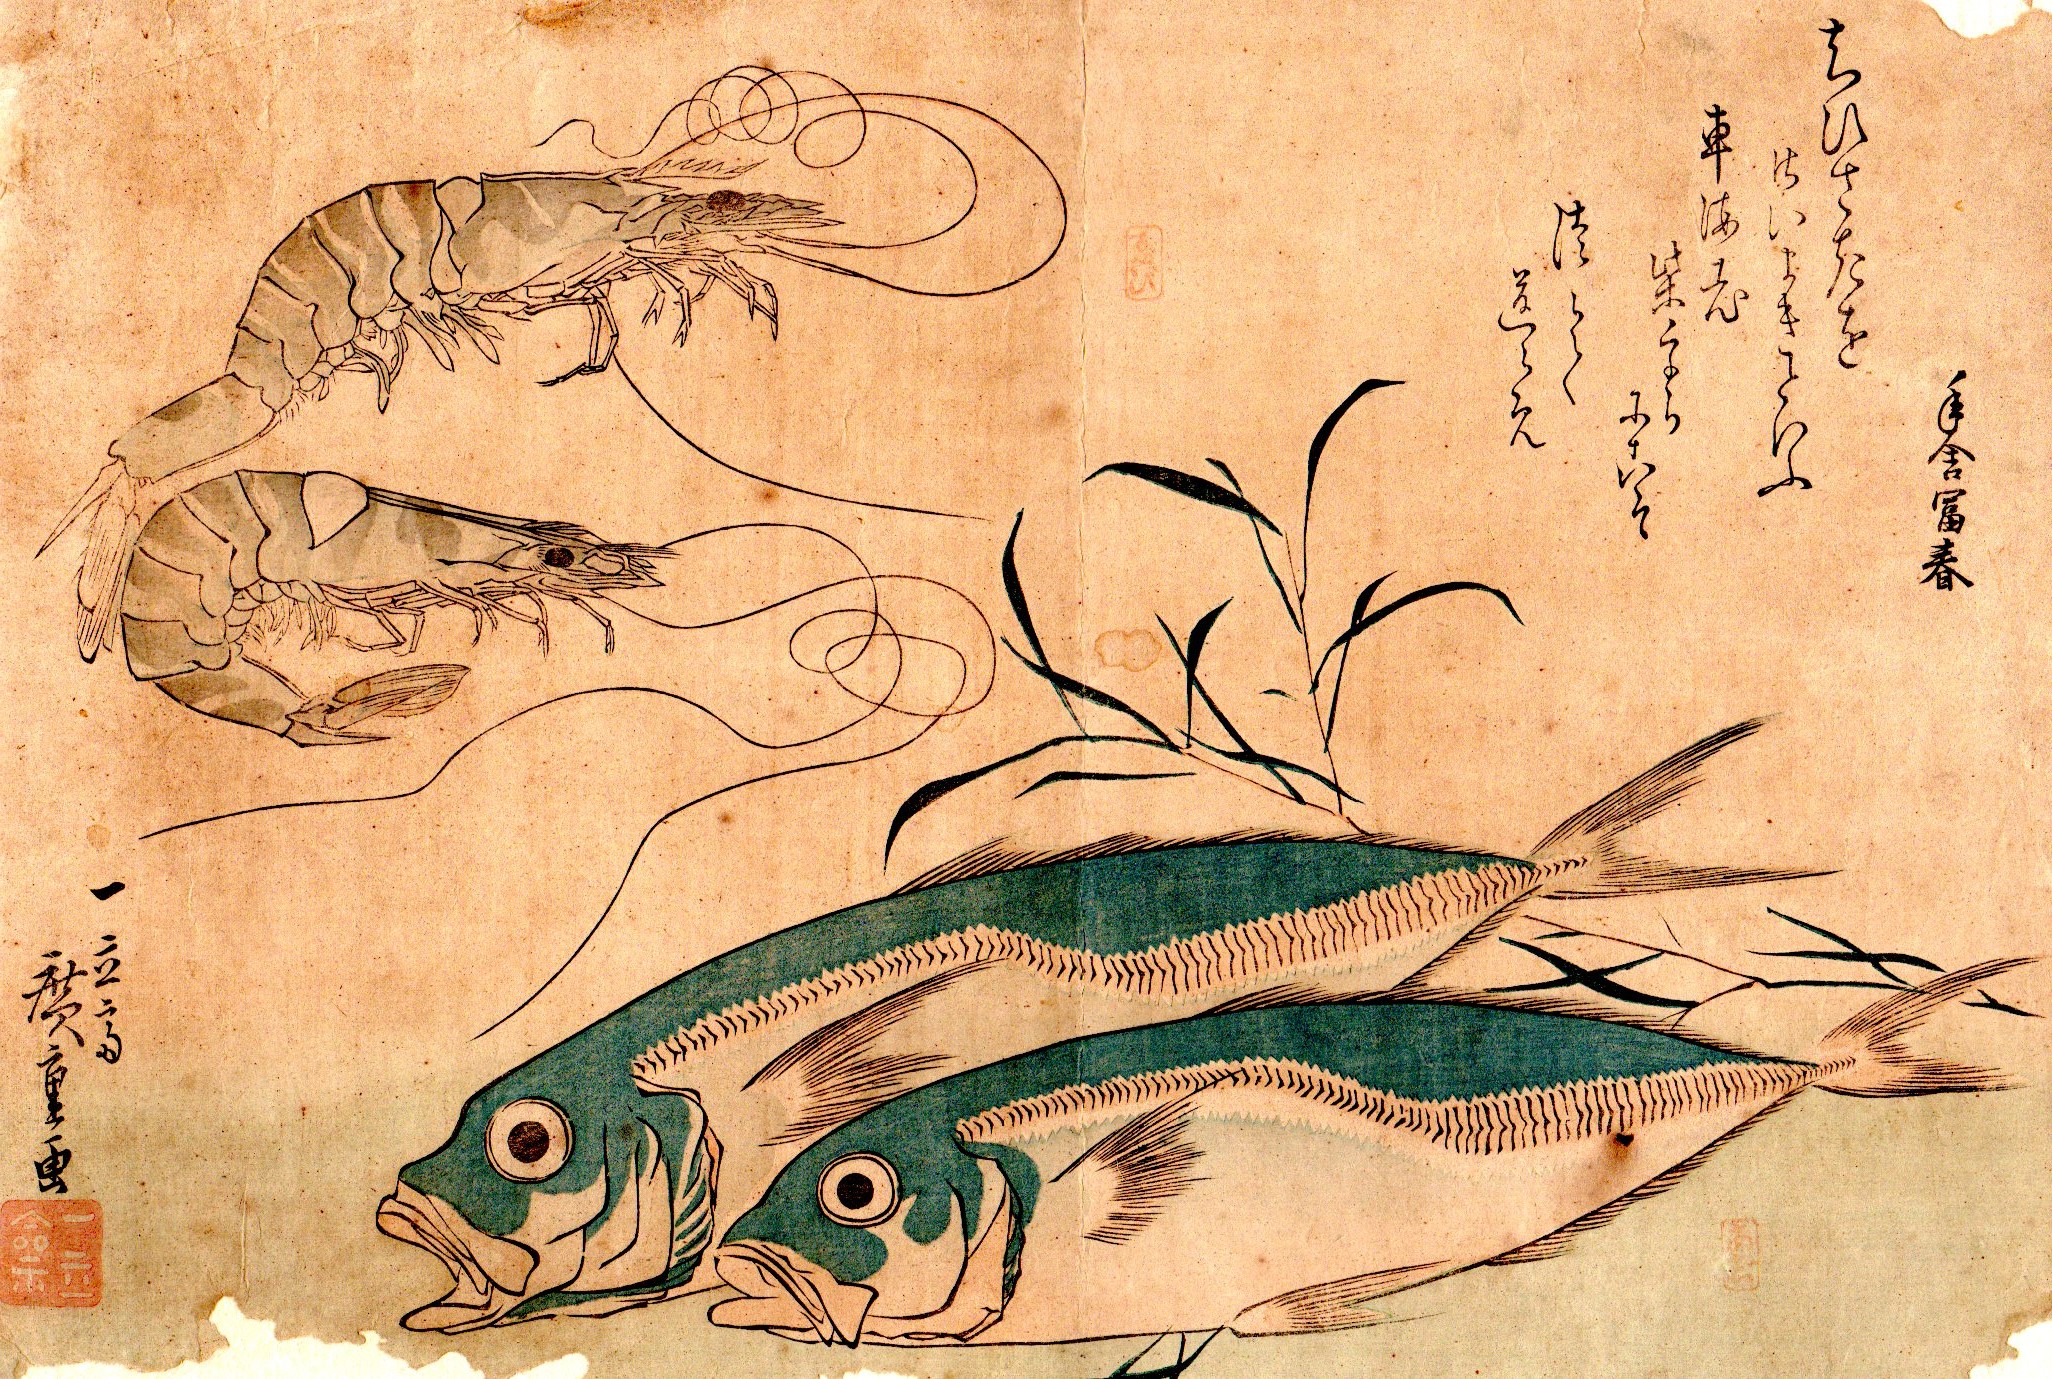 木版画彩色刷 魚: 日本国際古地図学会